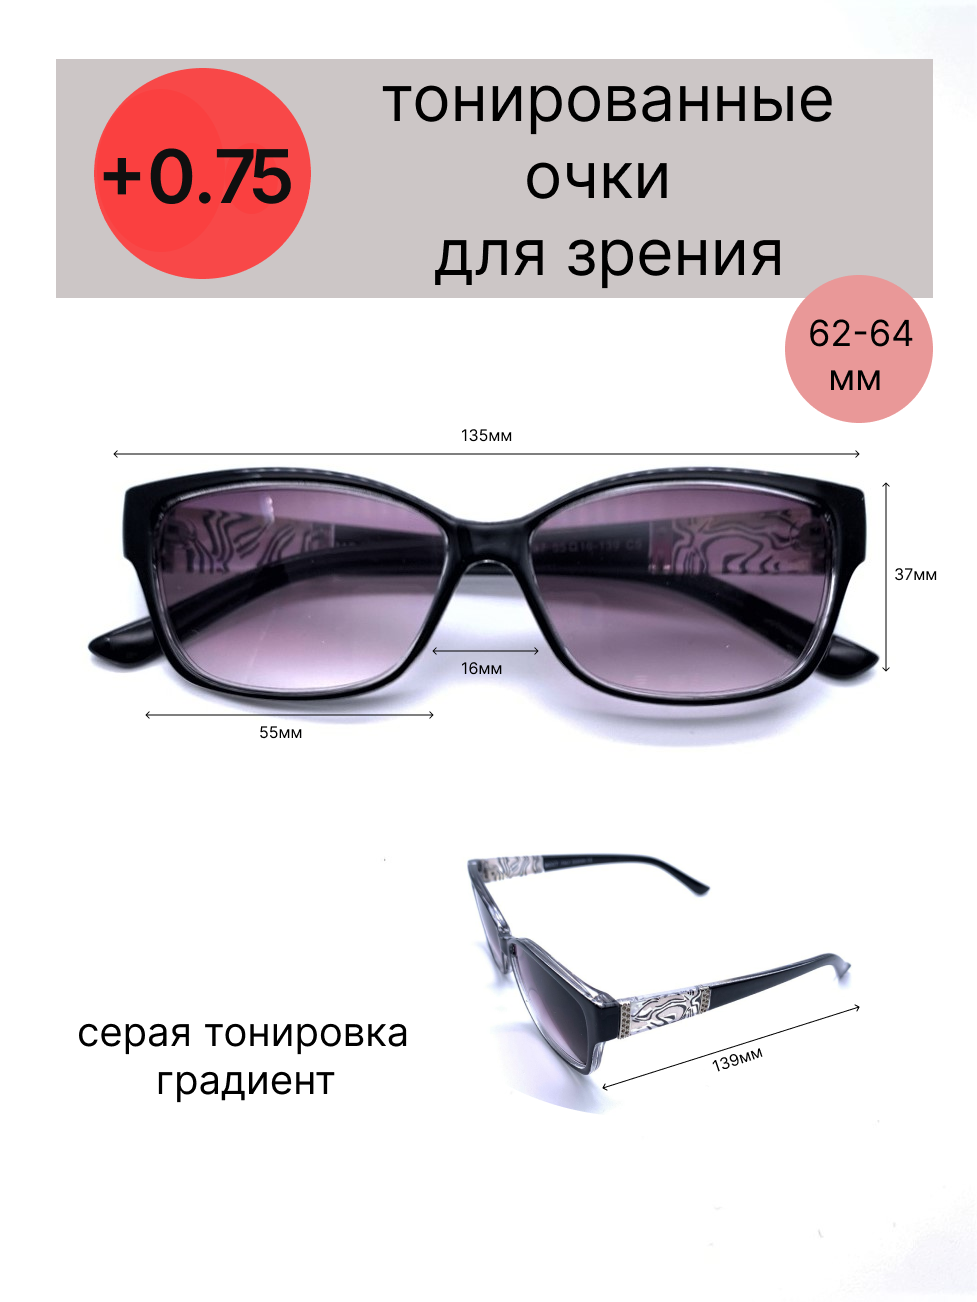 Тонированные очки с диоптриями +0.75